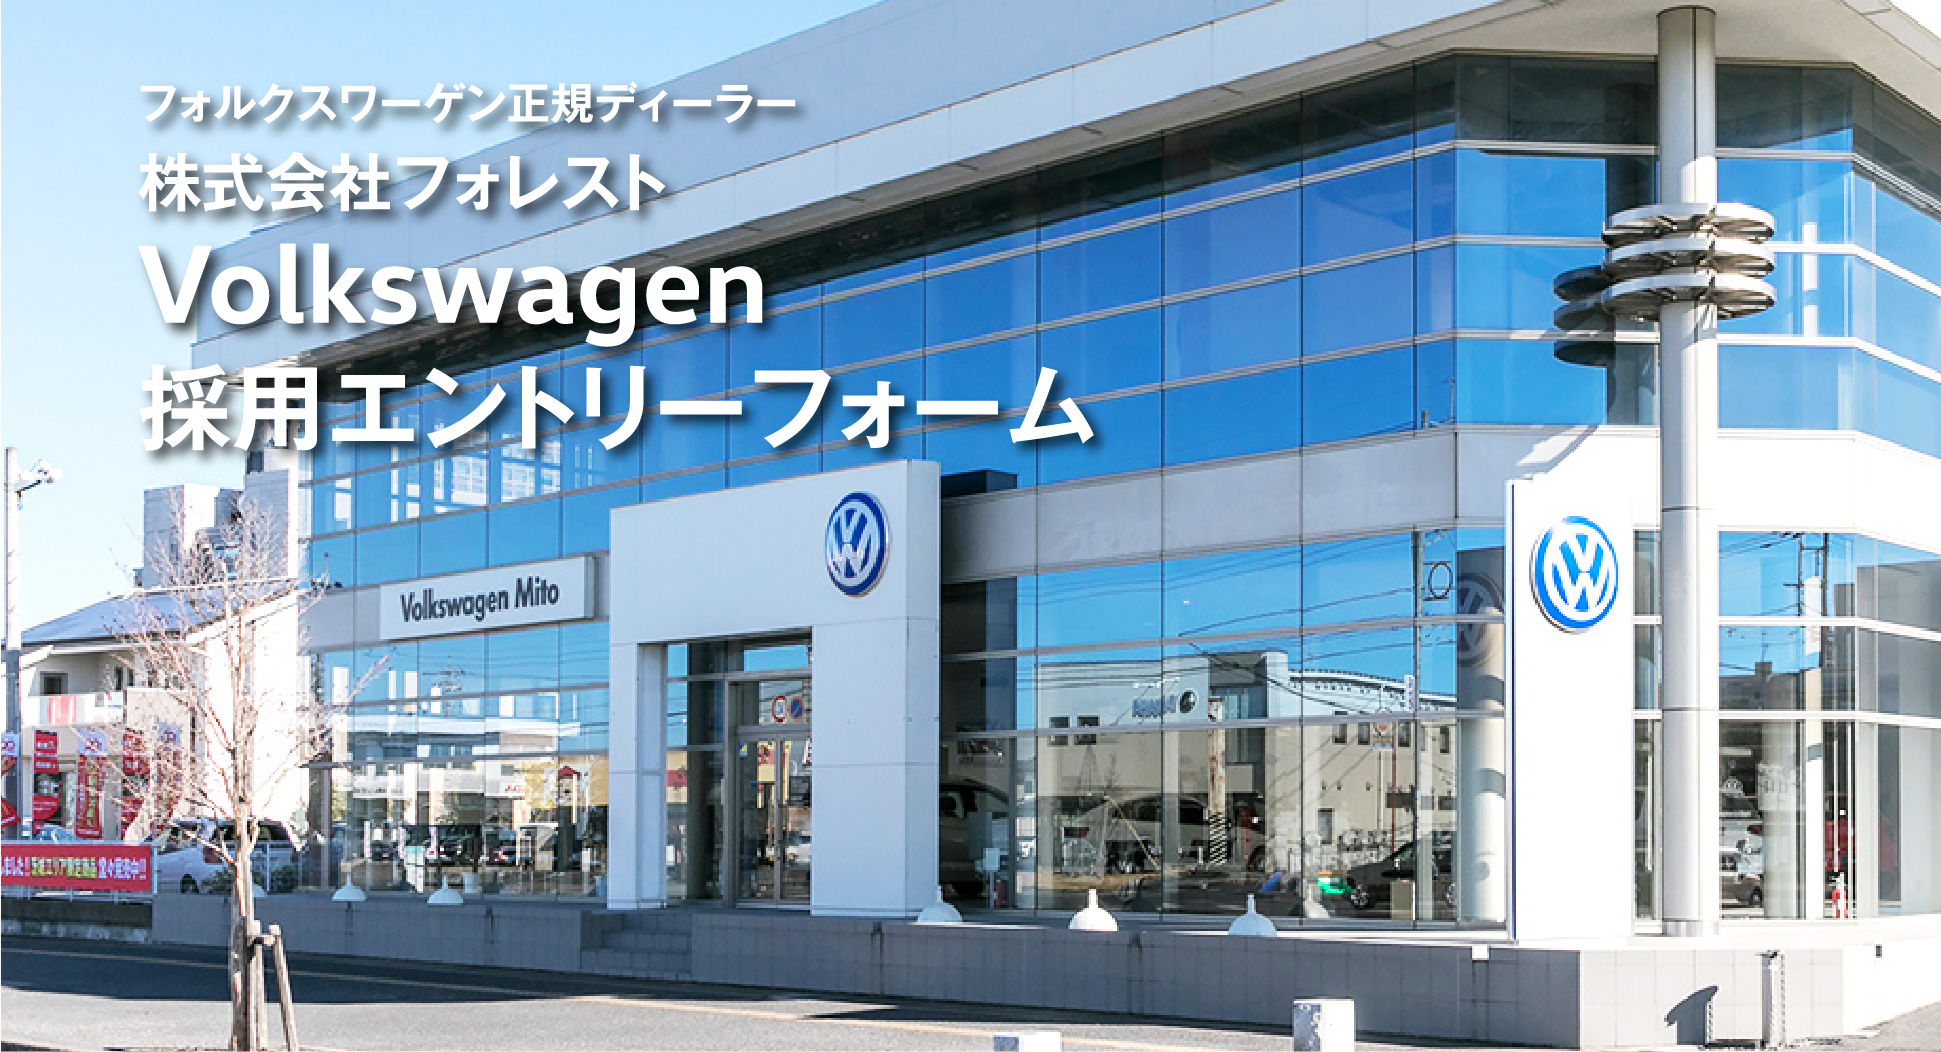 株式会社フォレスト Volkswagen 採用エントリーフォーム